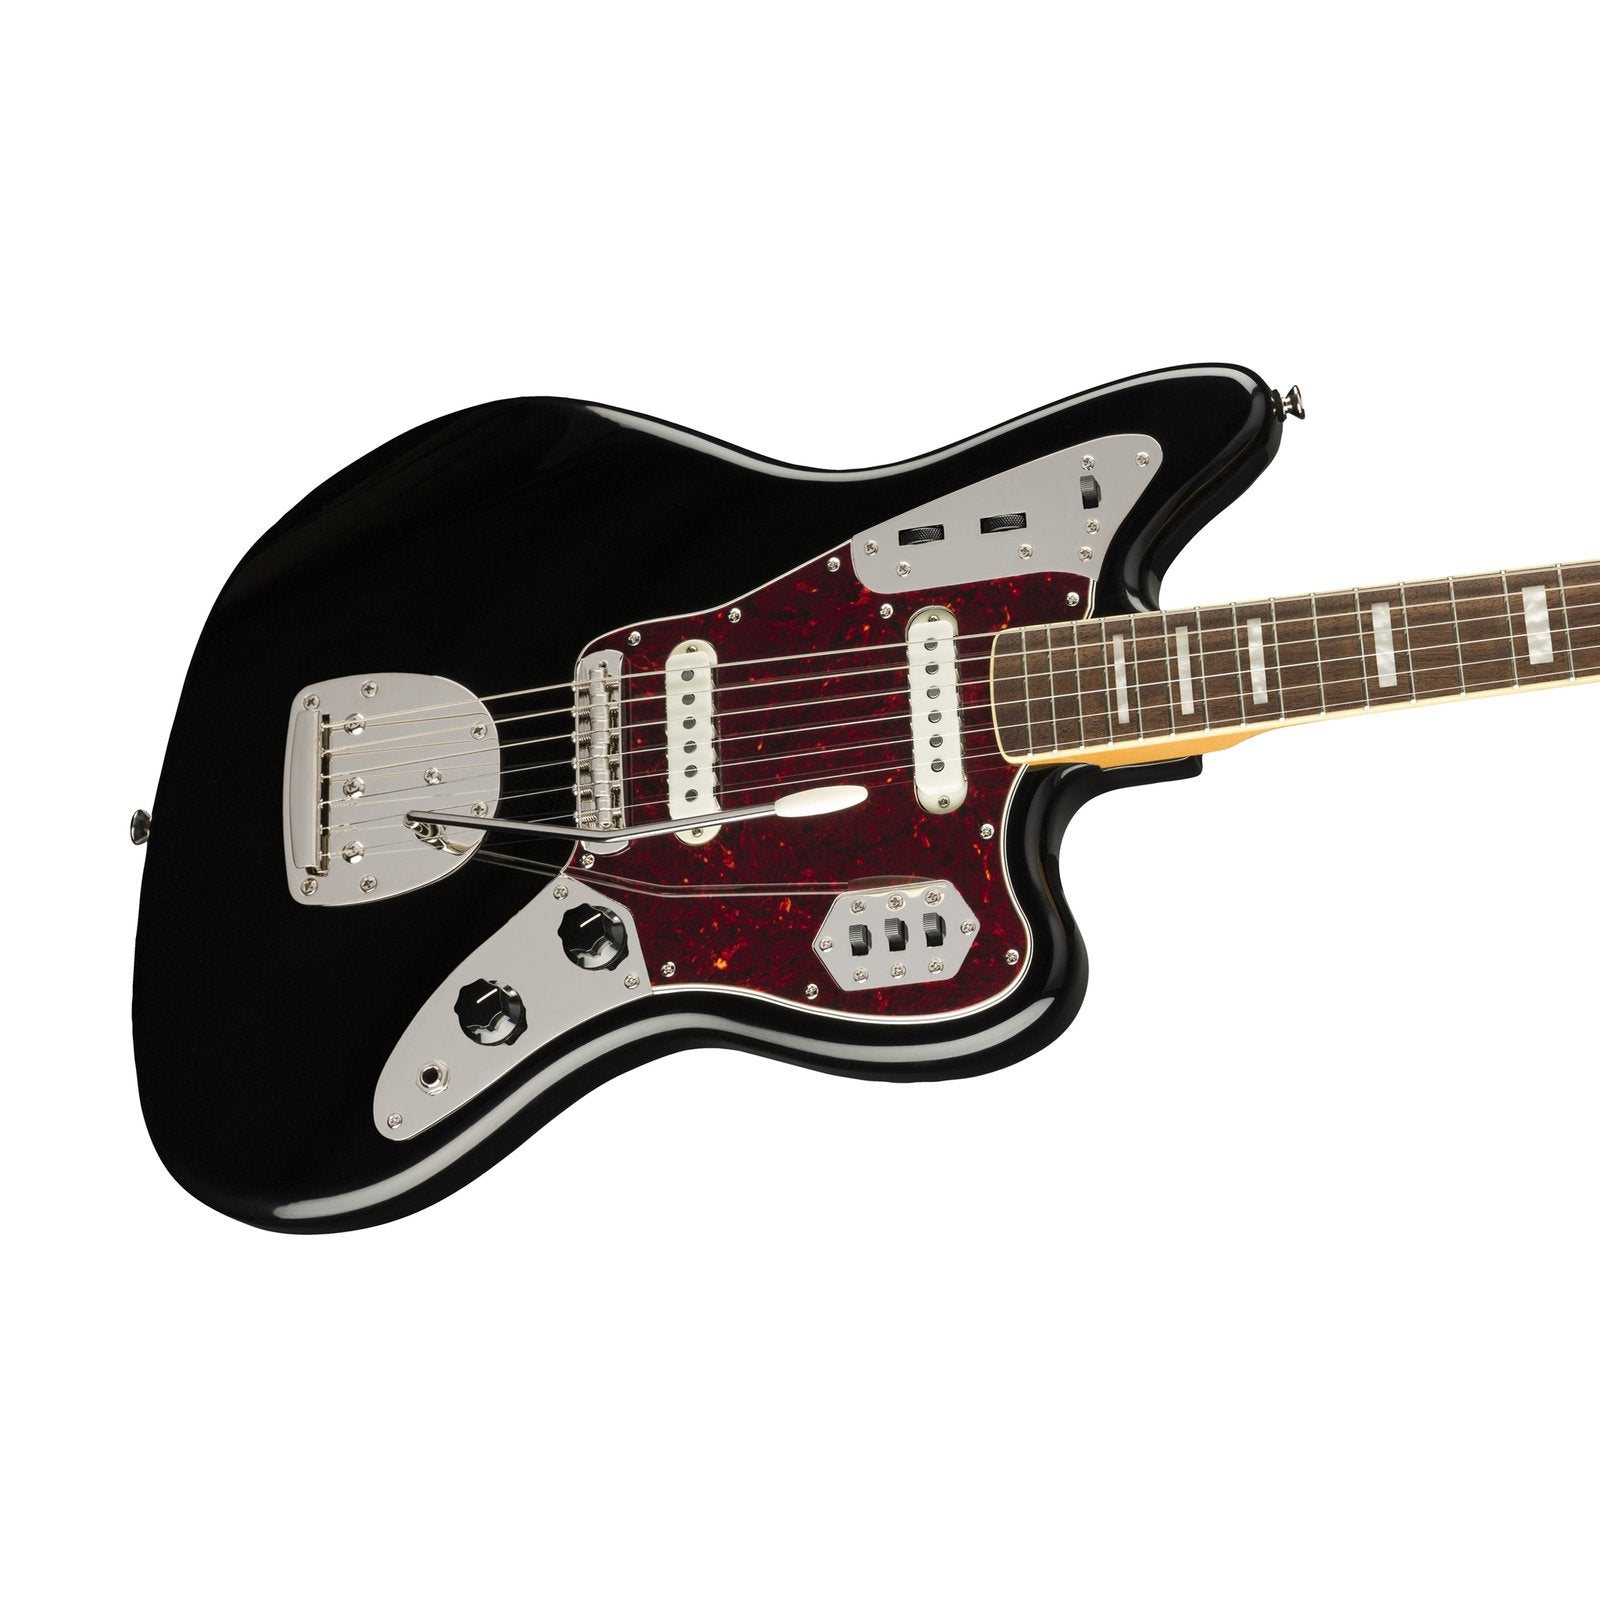 Squier Classic Vibe 70s Jaguar Electric Guitar, Laurel FB, Black, SQUIER BY FENDER, ELECTRIC GUITAR, squier-by-fender-electric-guitar-037-4090-506, ZOSO MUSIC SDN BHD